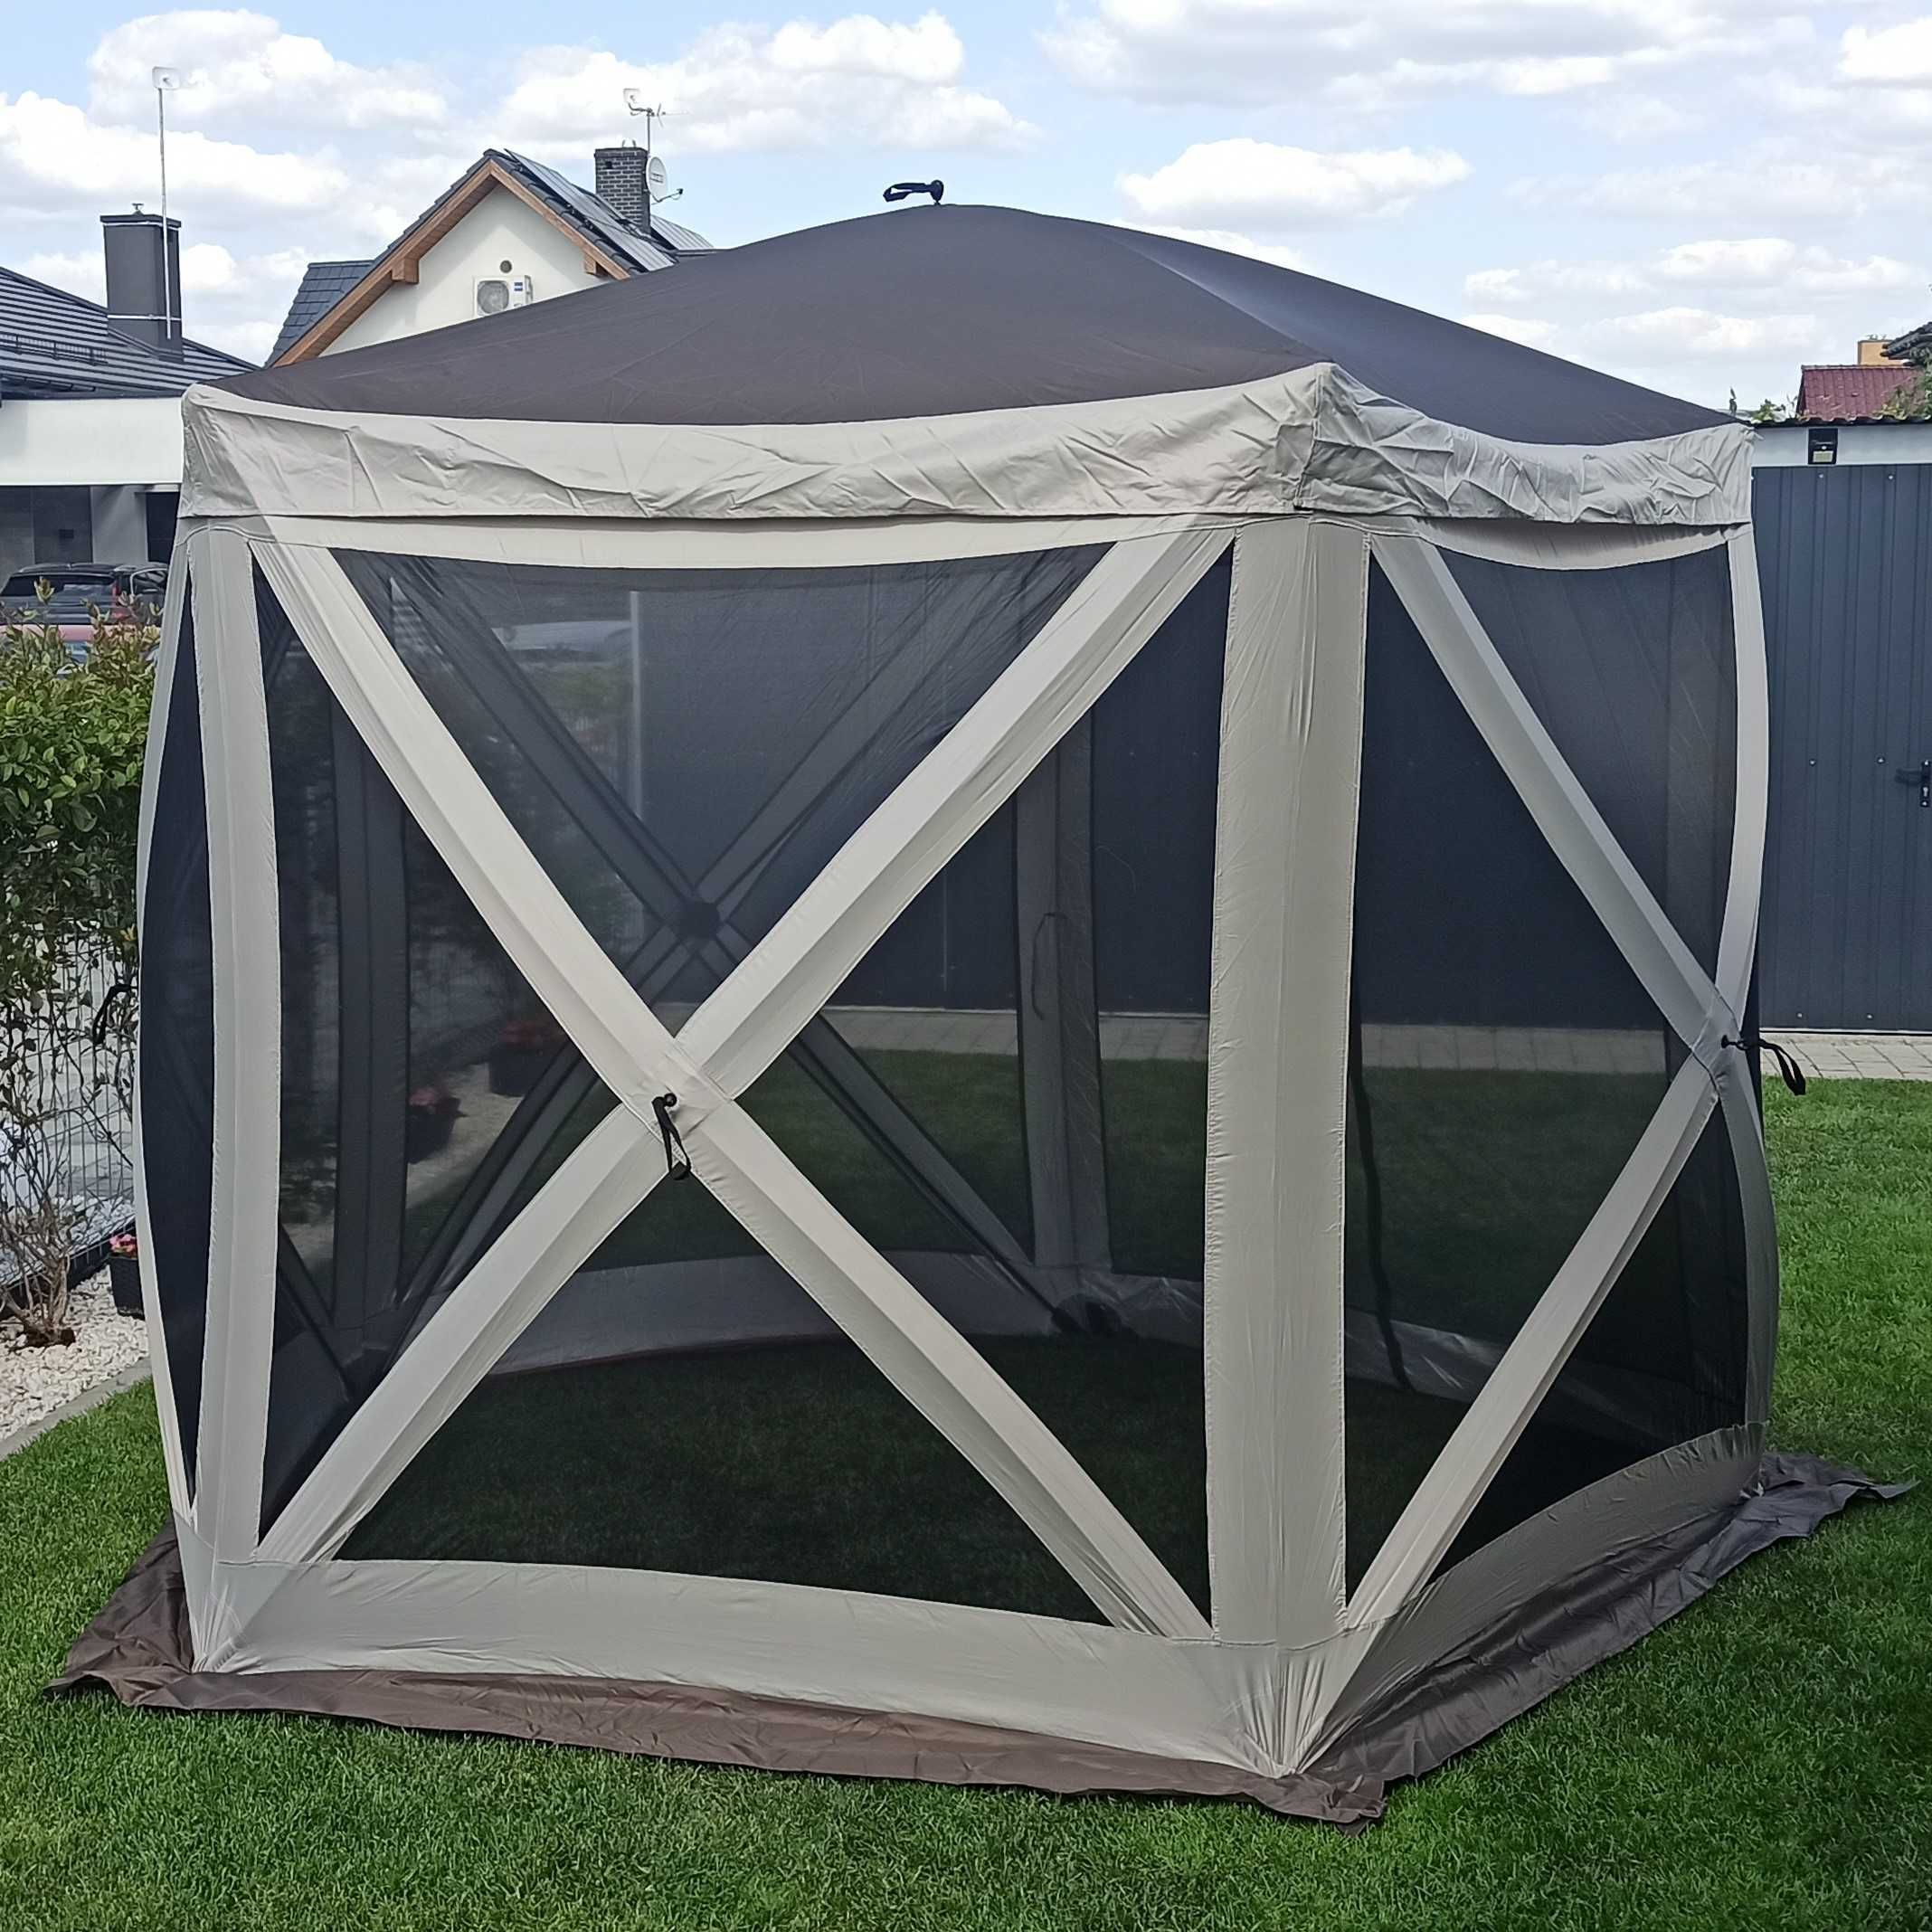 Pawilon namiot ogrodowy 2,6 x 2,6 m ekspresowy handlowy POP UP altana